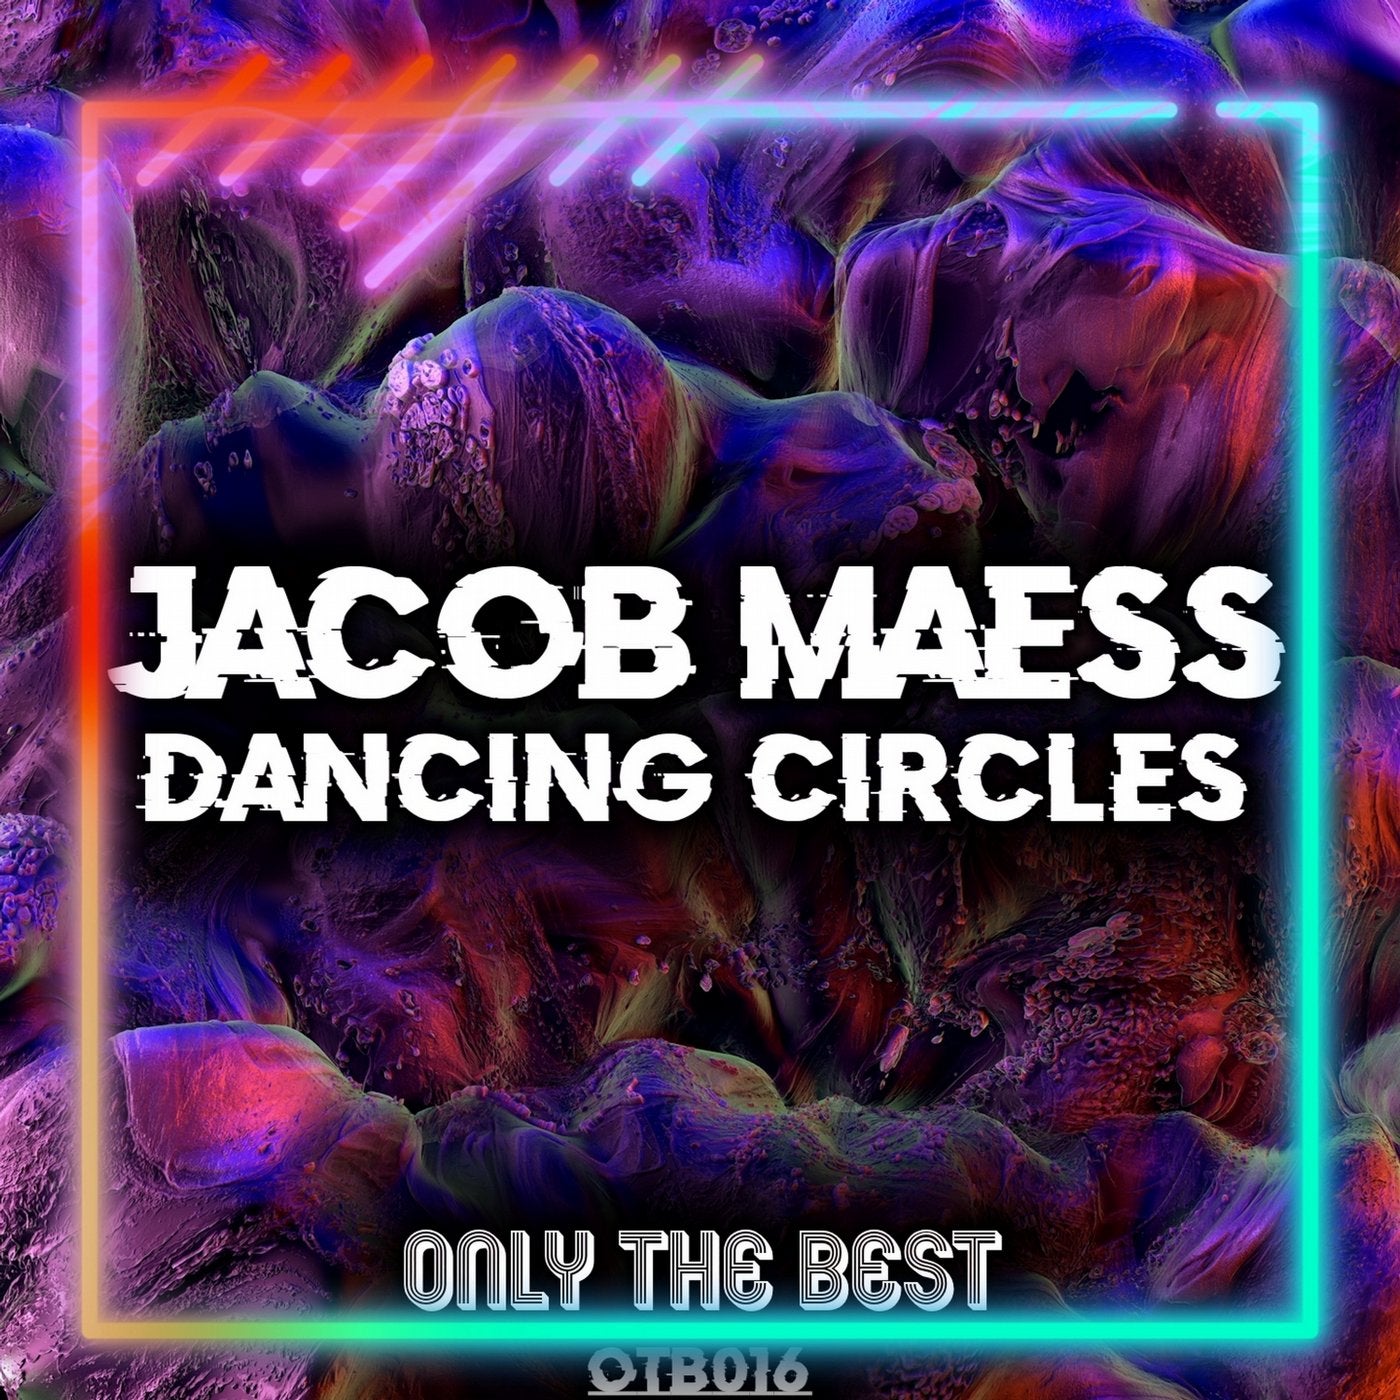 Dancing Circles